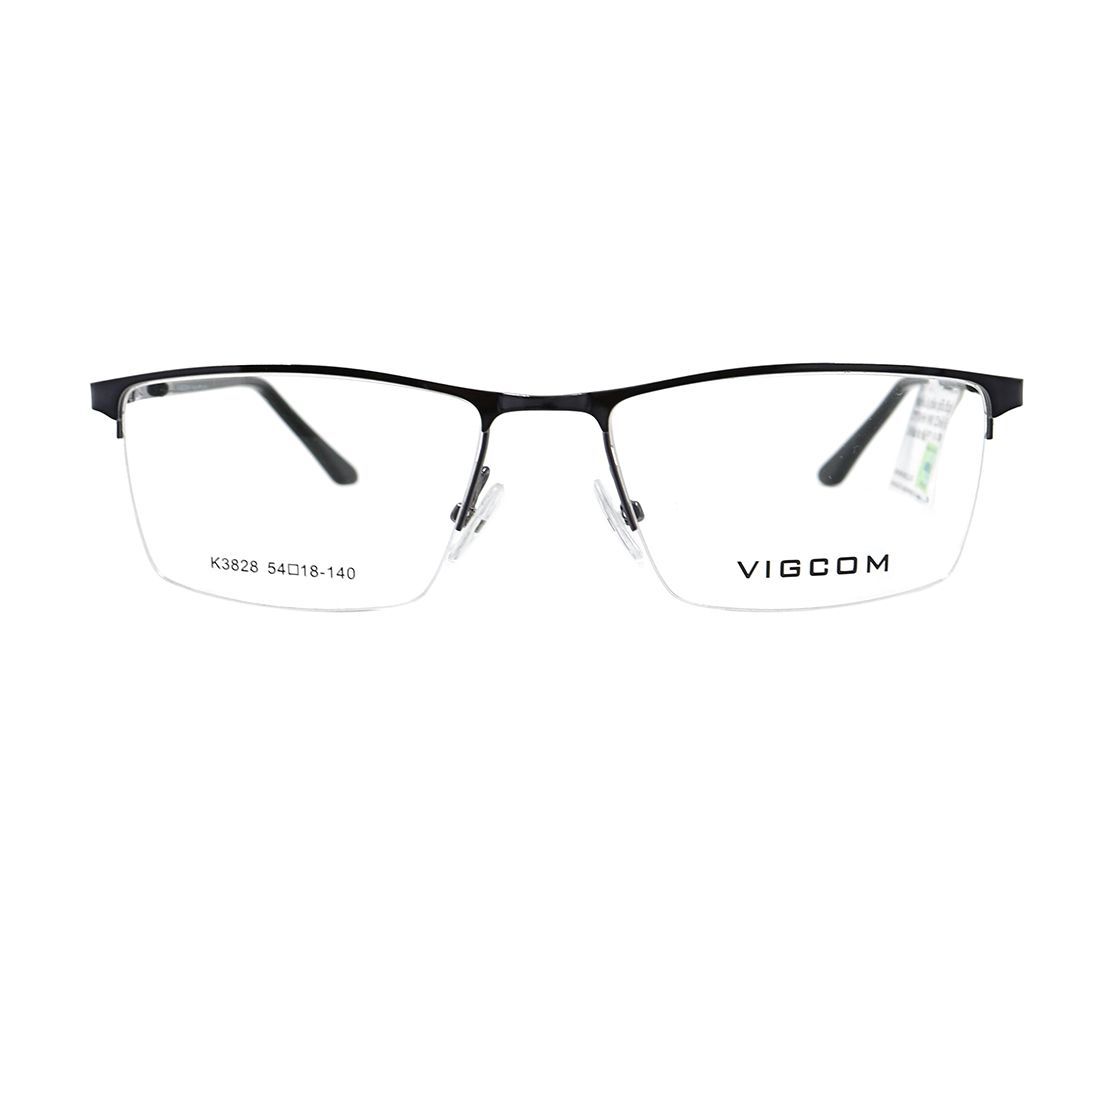  Gọng kính Vigcom VG3828 C4 